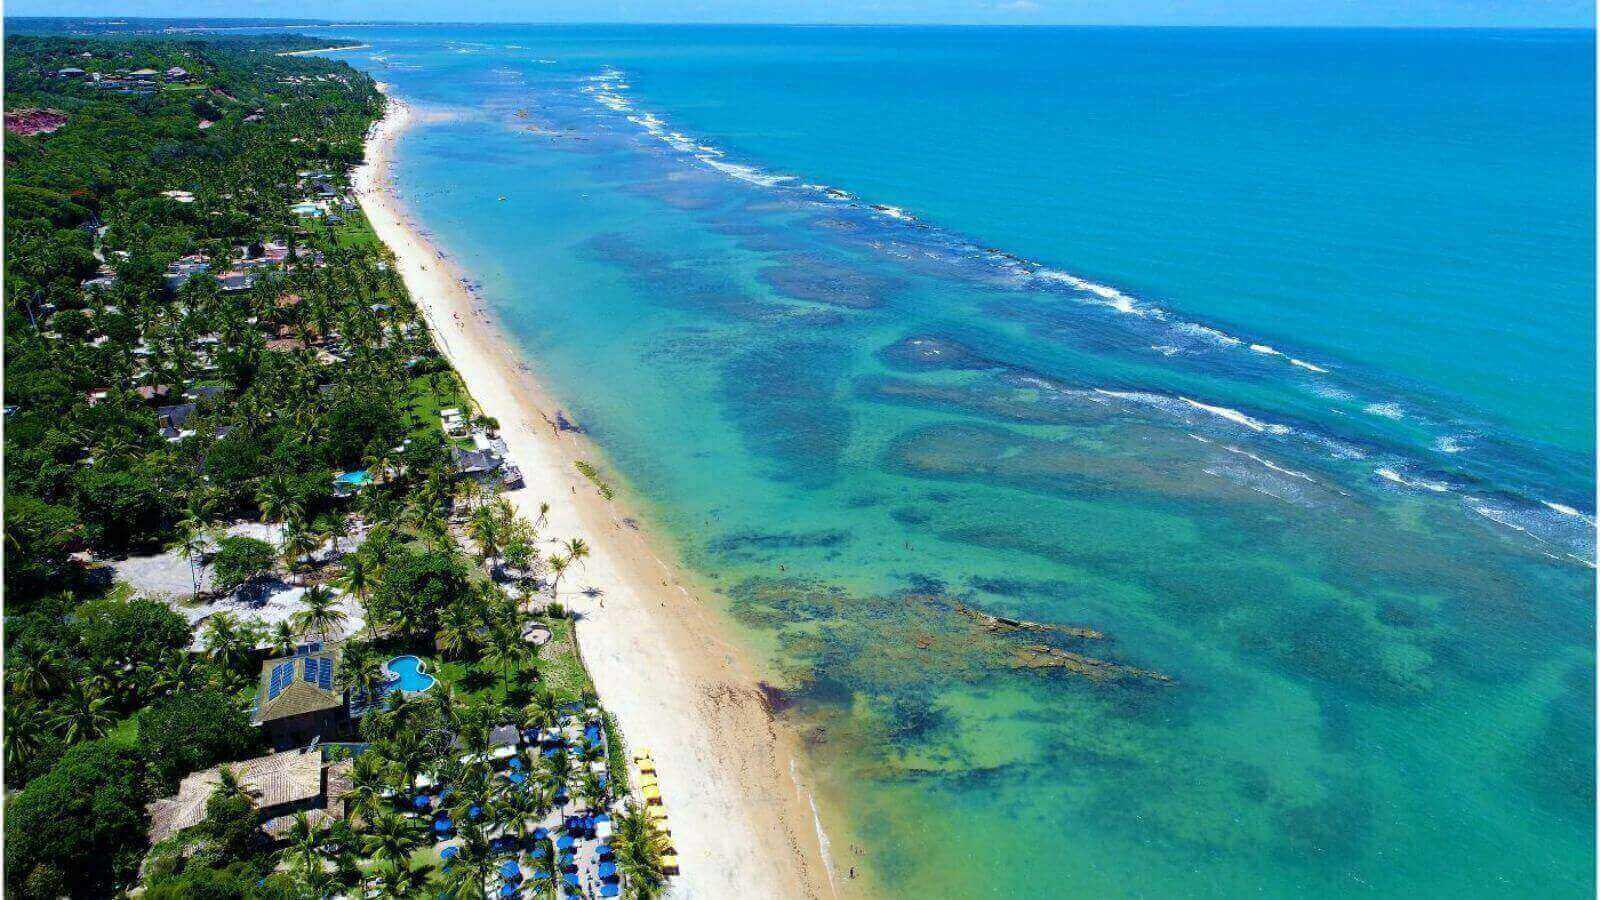 Praia paradisíaca em Trancoso, Bahia, com águas cristalinas, faixa de areia extensa e vegetação exuberante ao longo da costa.